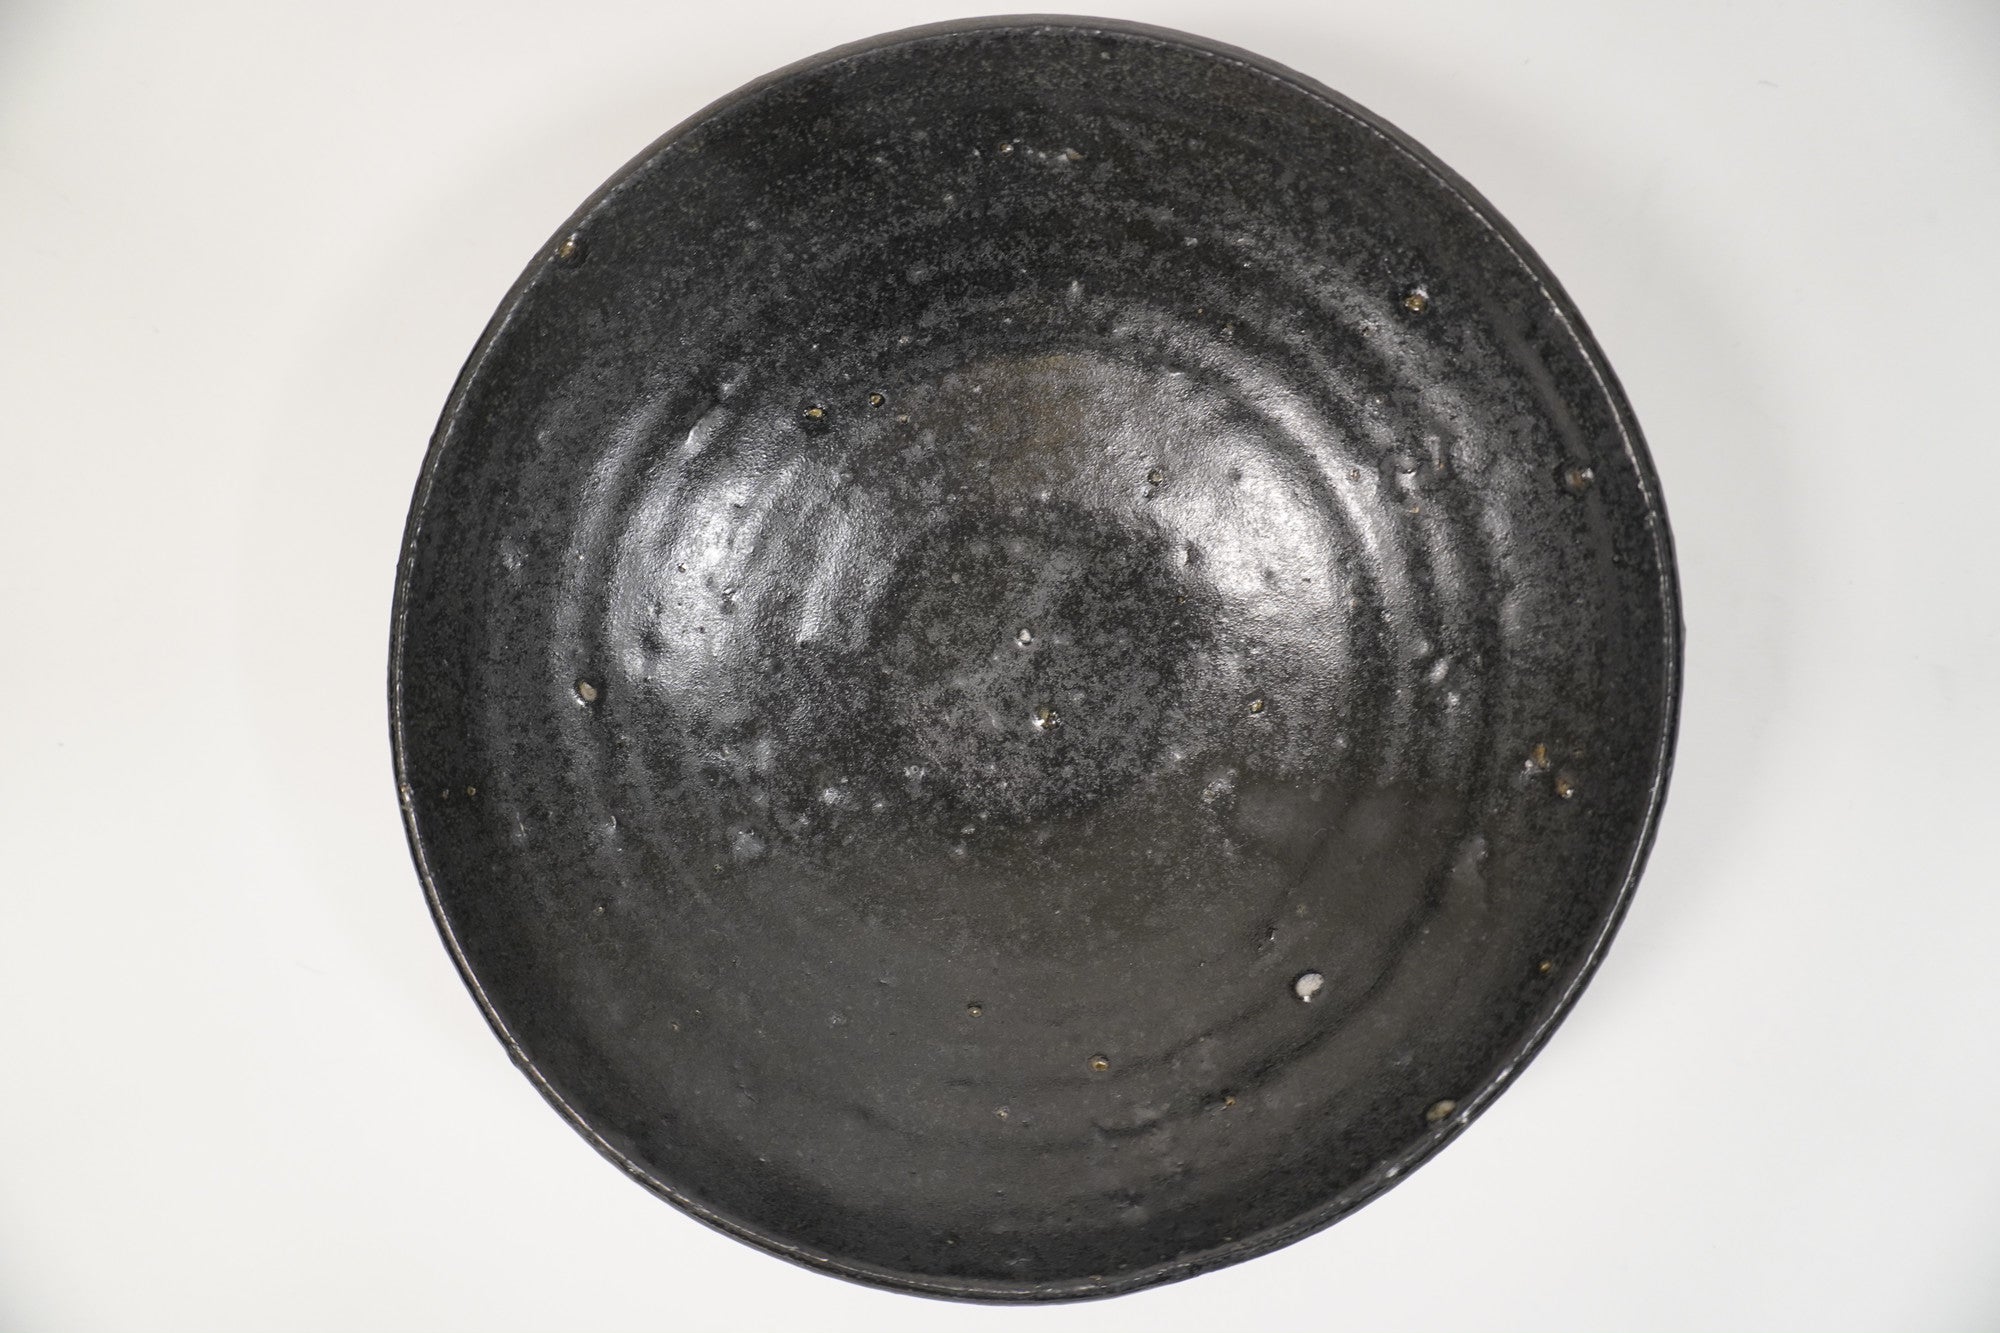 Manabu Yoshida Jet black flat bowl 6 inch